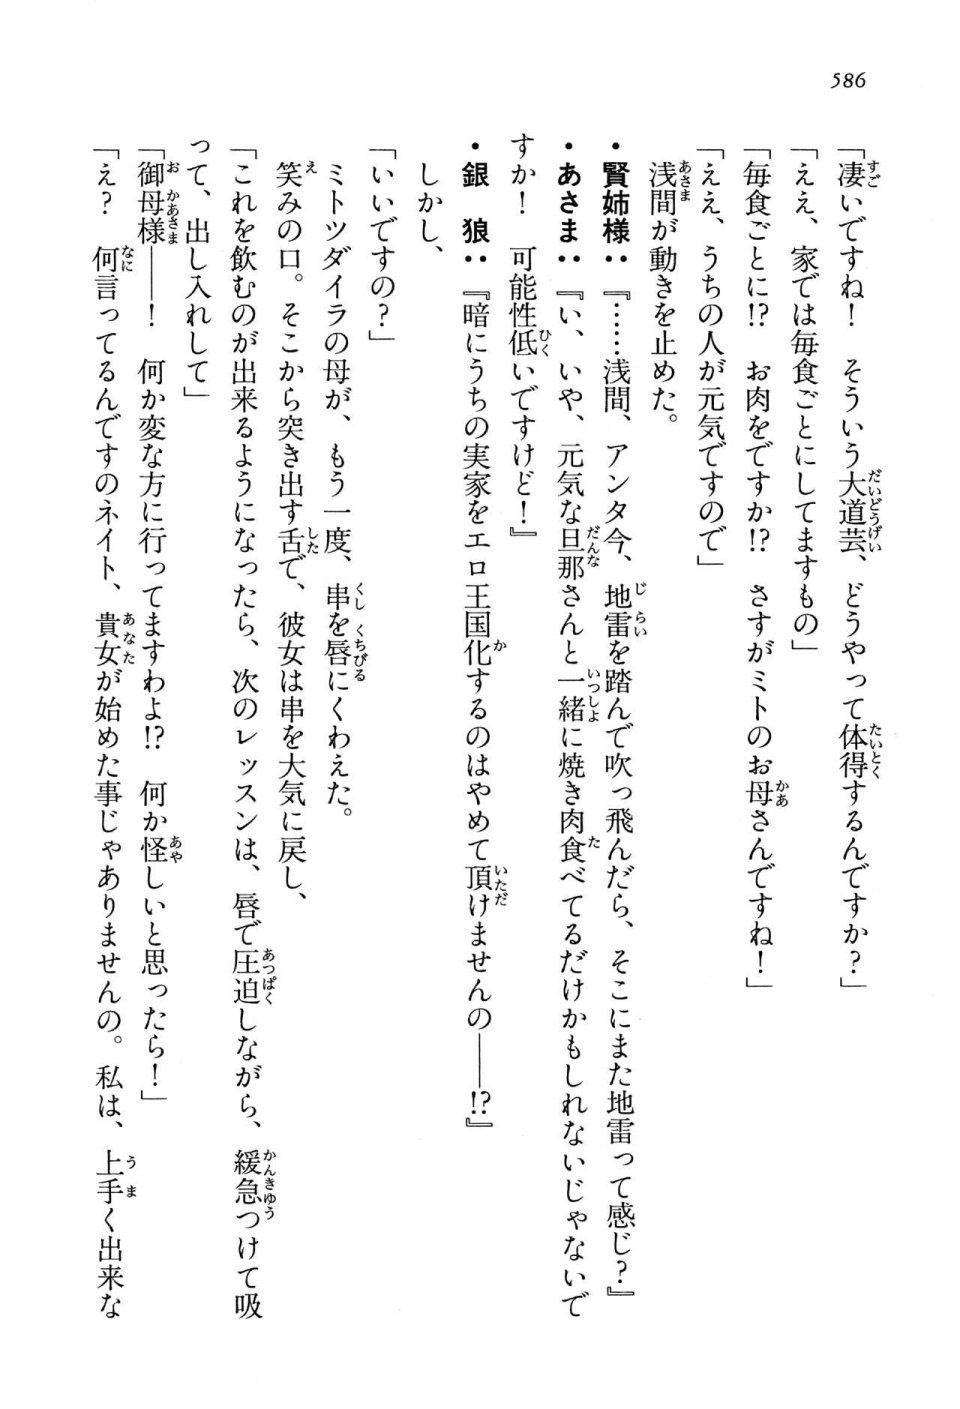 Kyoukai Senjou no Horizon LN Vol 13(6A) - Photo #586